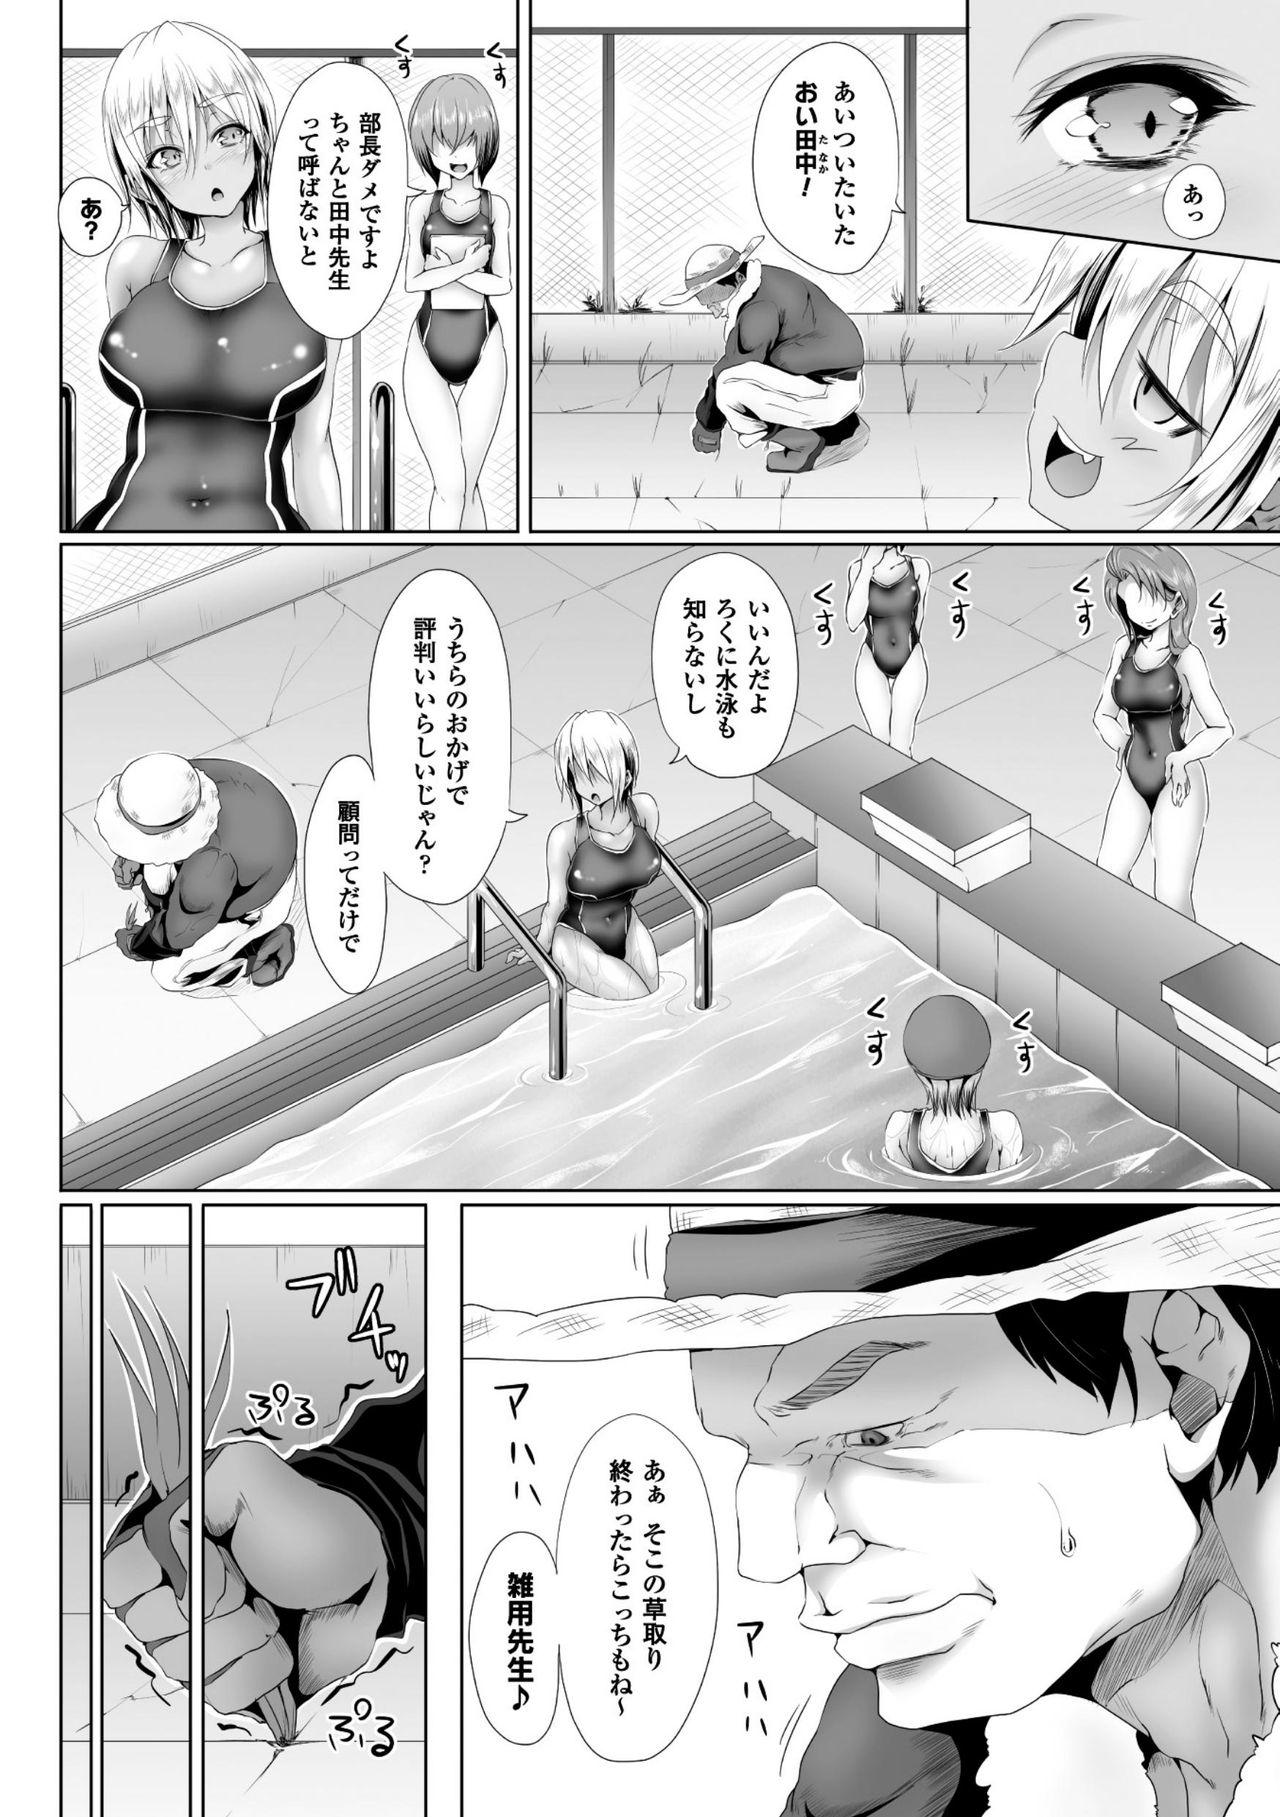 Seigi no Heroine Kangoku File Vol. 8 37